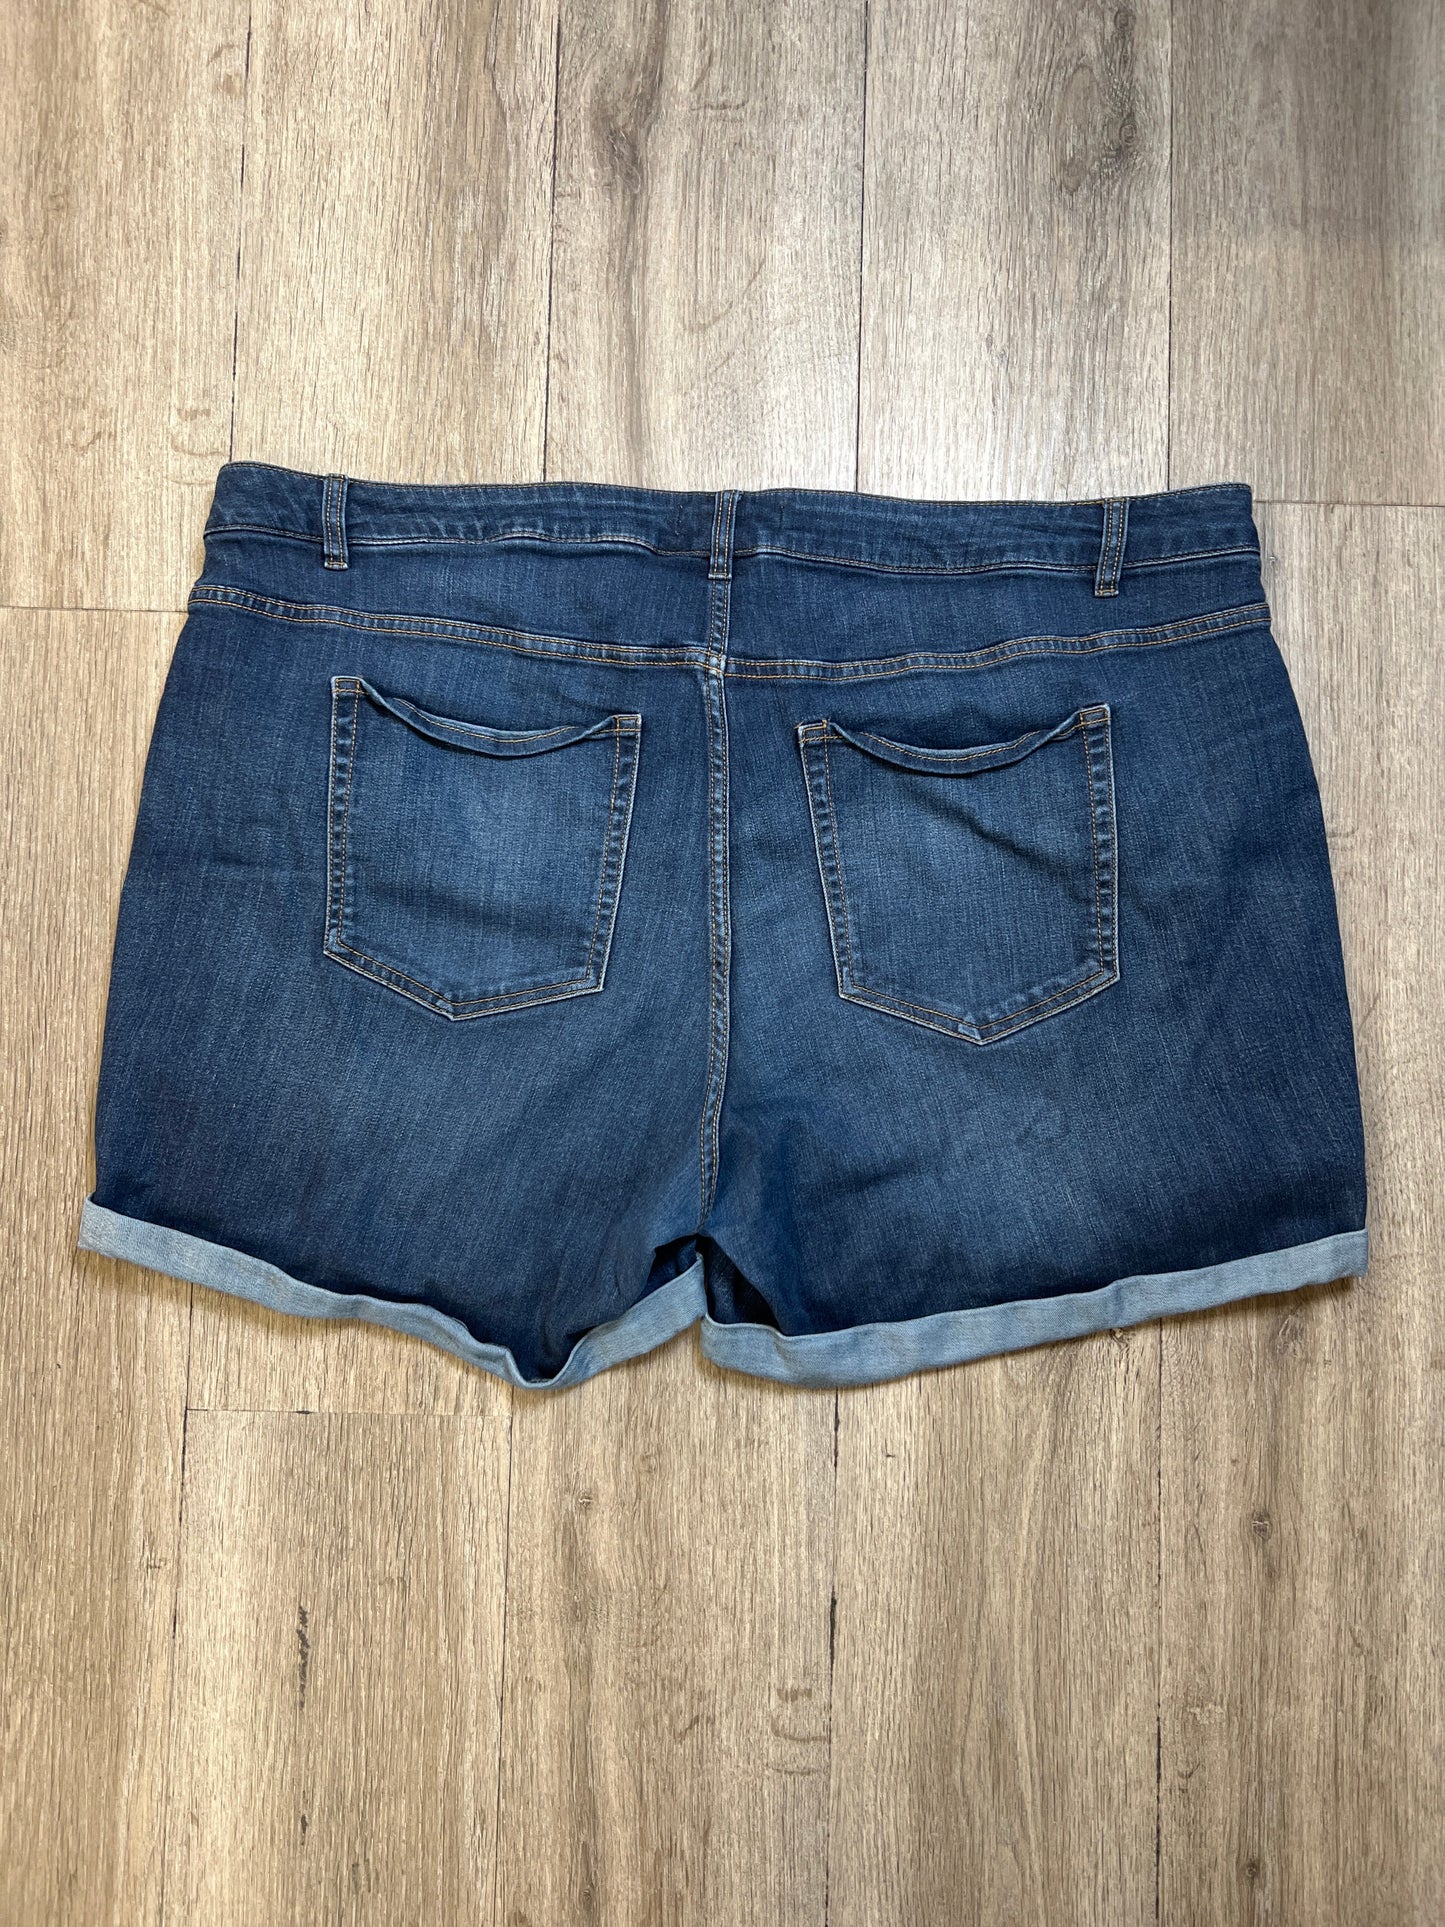 Shorts By Lane Bryant  Size: 3x